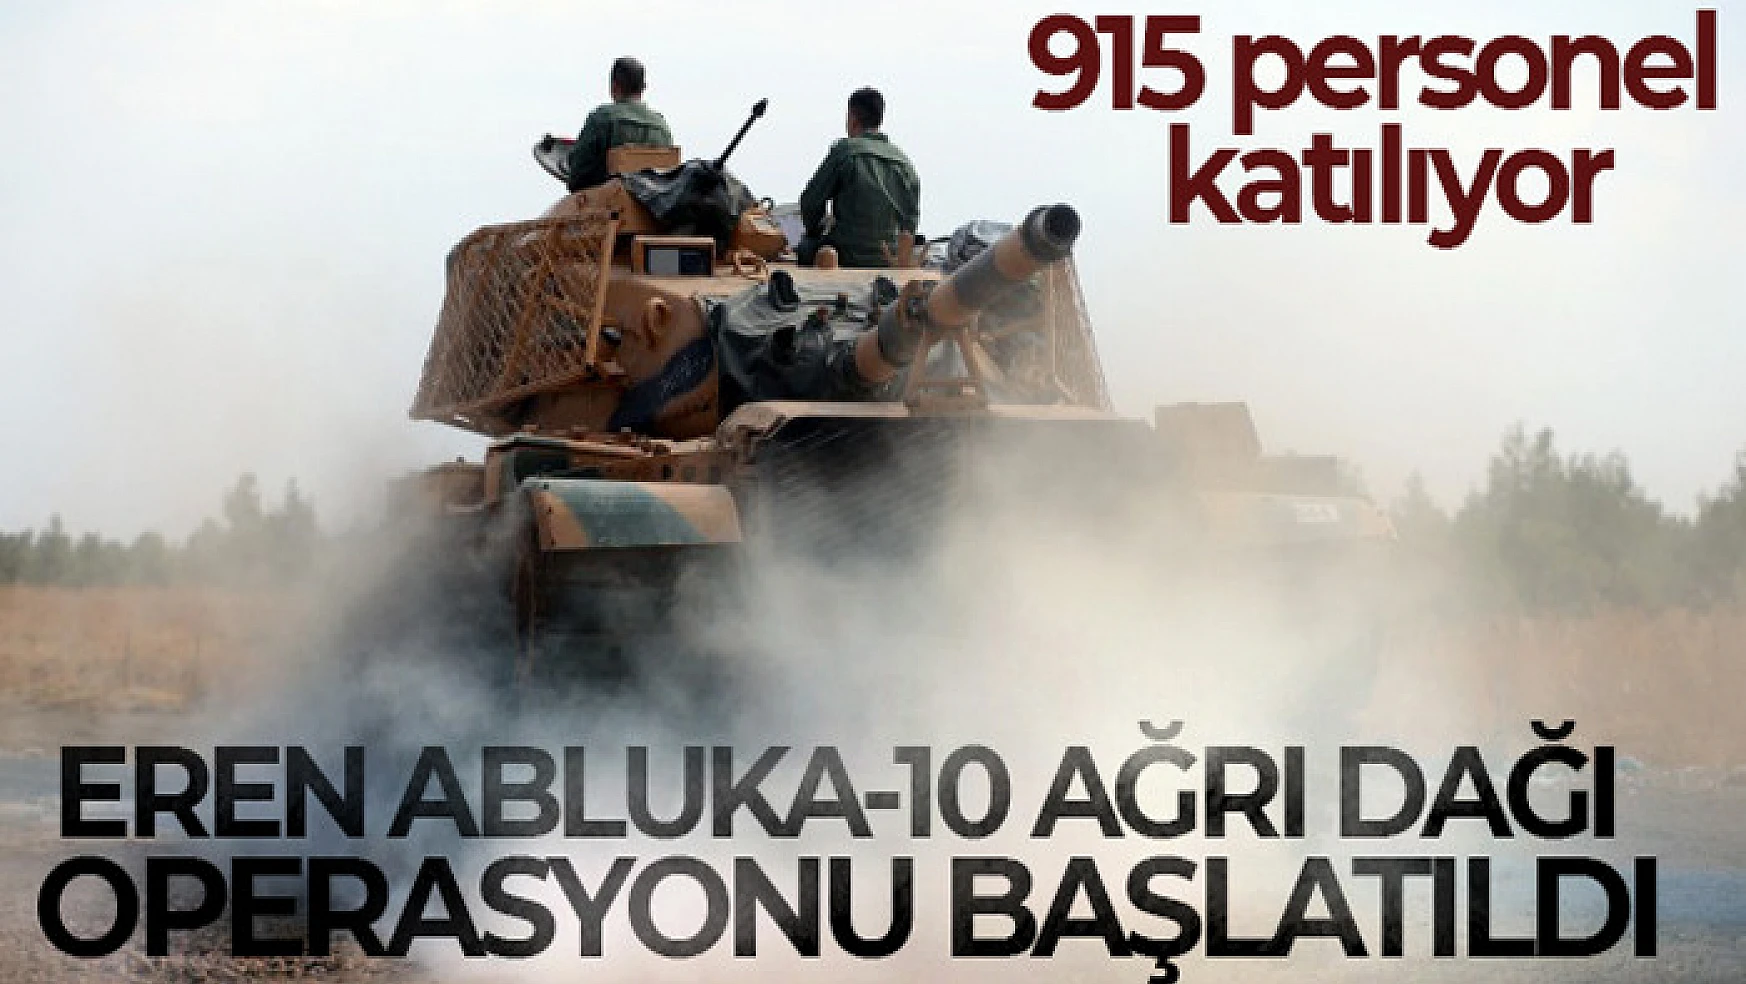 'Eren Abluka-10 Ağrı Dağı' operasyonu